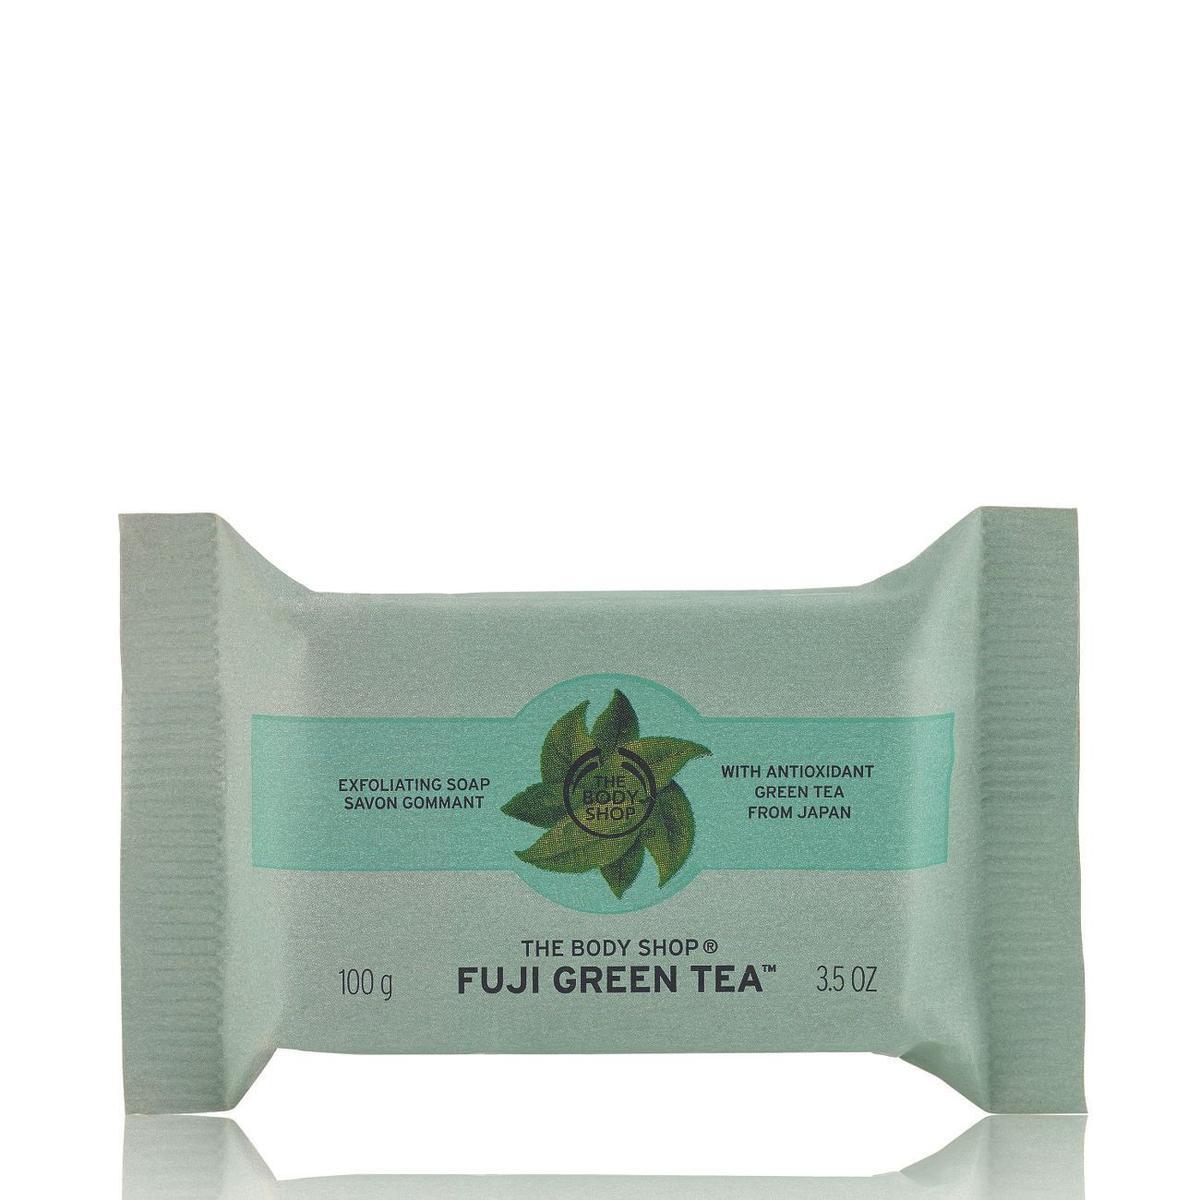 Jabón exfoliante Fuji Green Tea, de The Body Shop